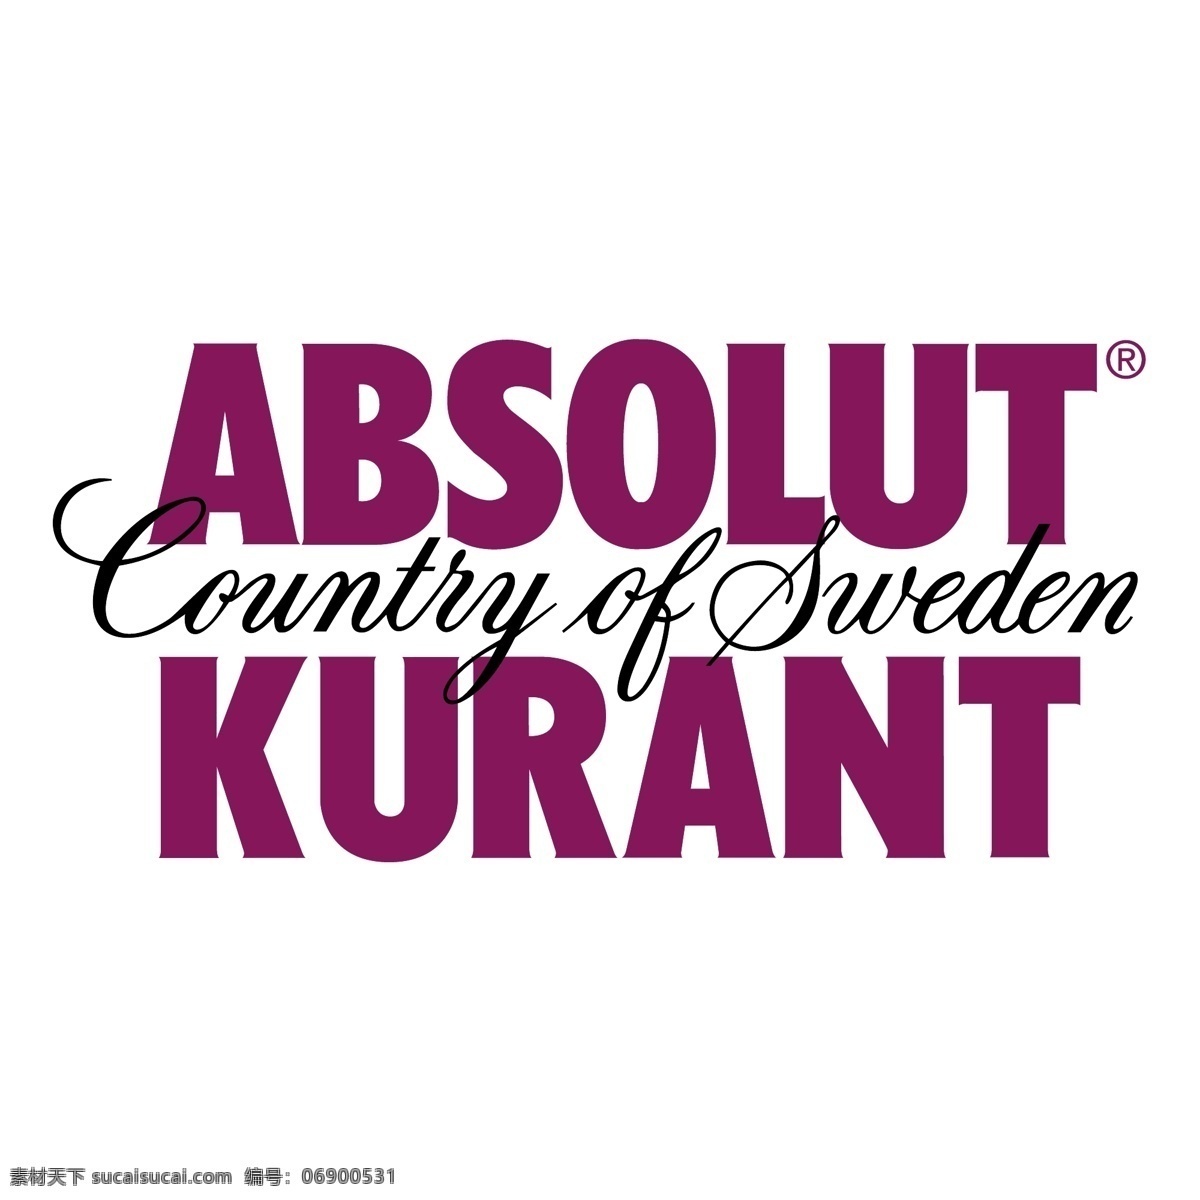 瑞典 伏特加 库 兰特 自由 kurant 标志 psd源文件 logo设计